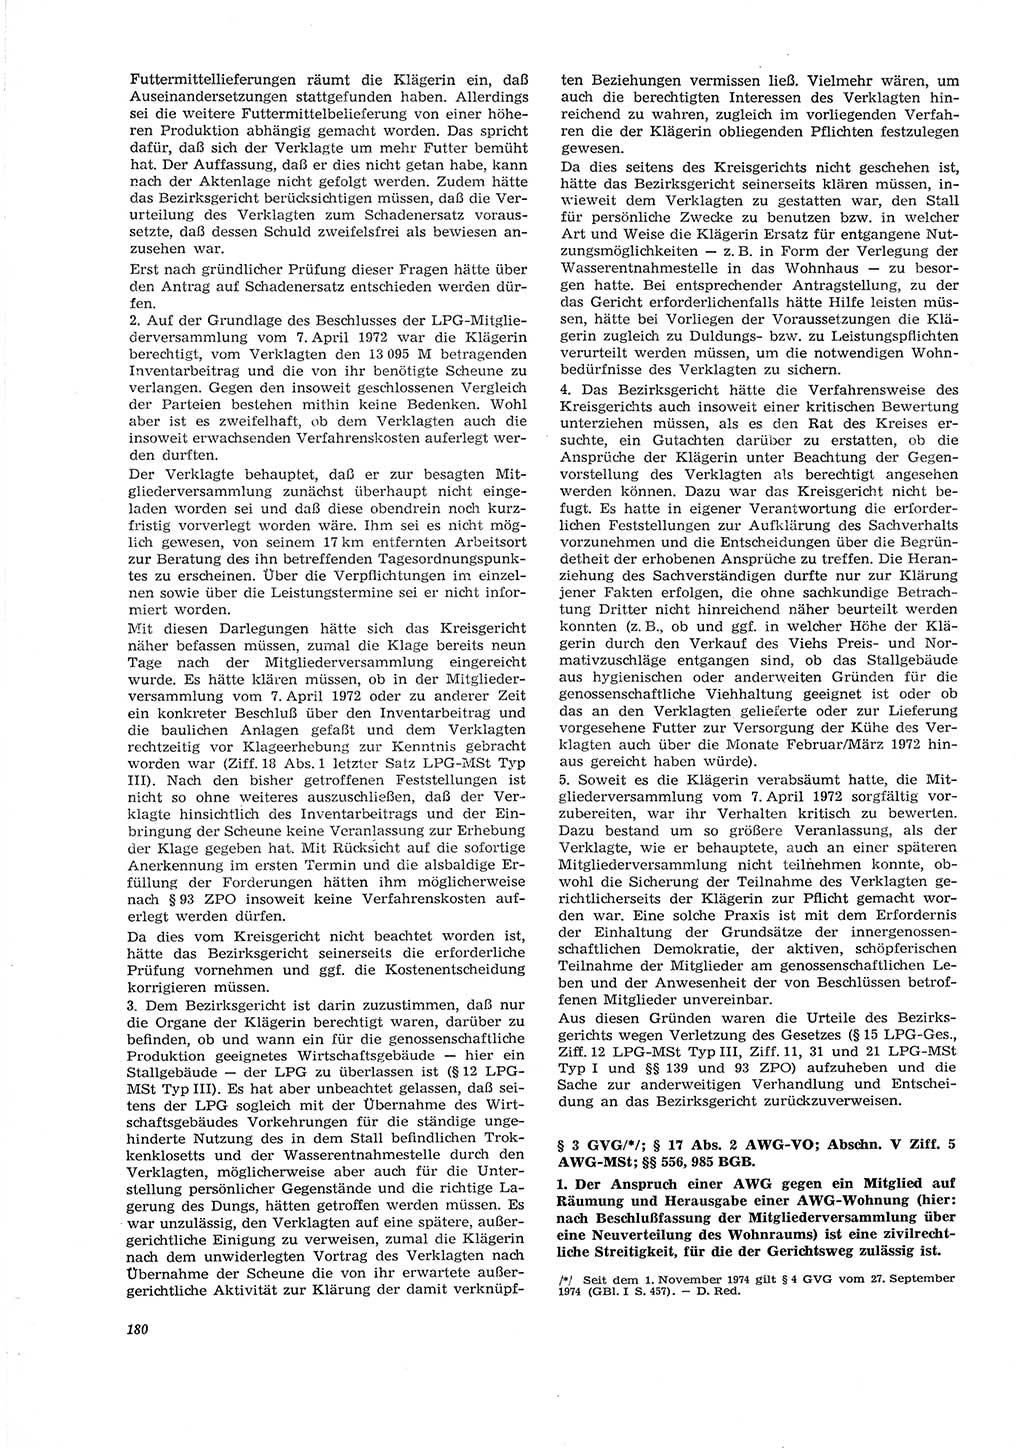 Neue Justiz (NJ), Zeitschrift für Recht und Rechtswissenschaft [Deutsche Demokratische Republik (DDR)], 29. Jahrgang 1975, Seite 180 (NJ DDR 1975, S. 180)